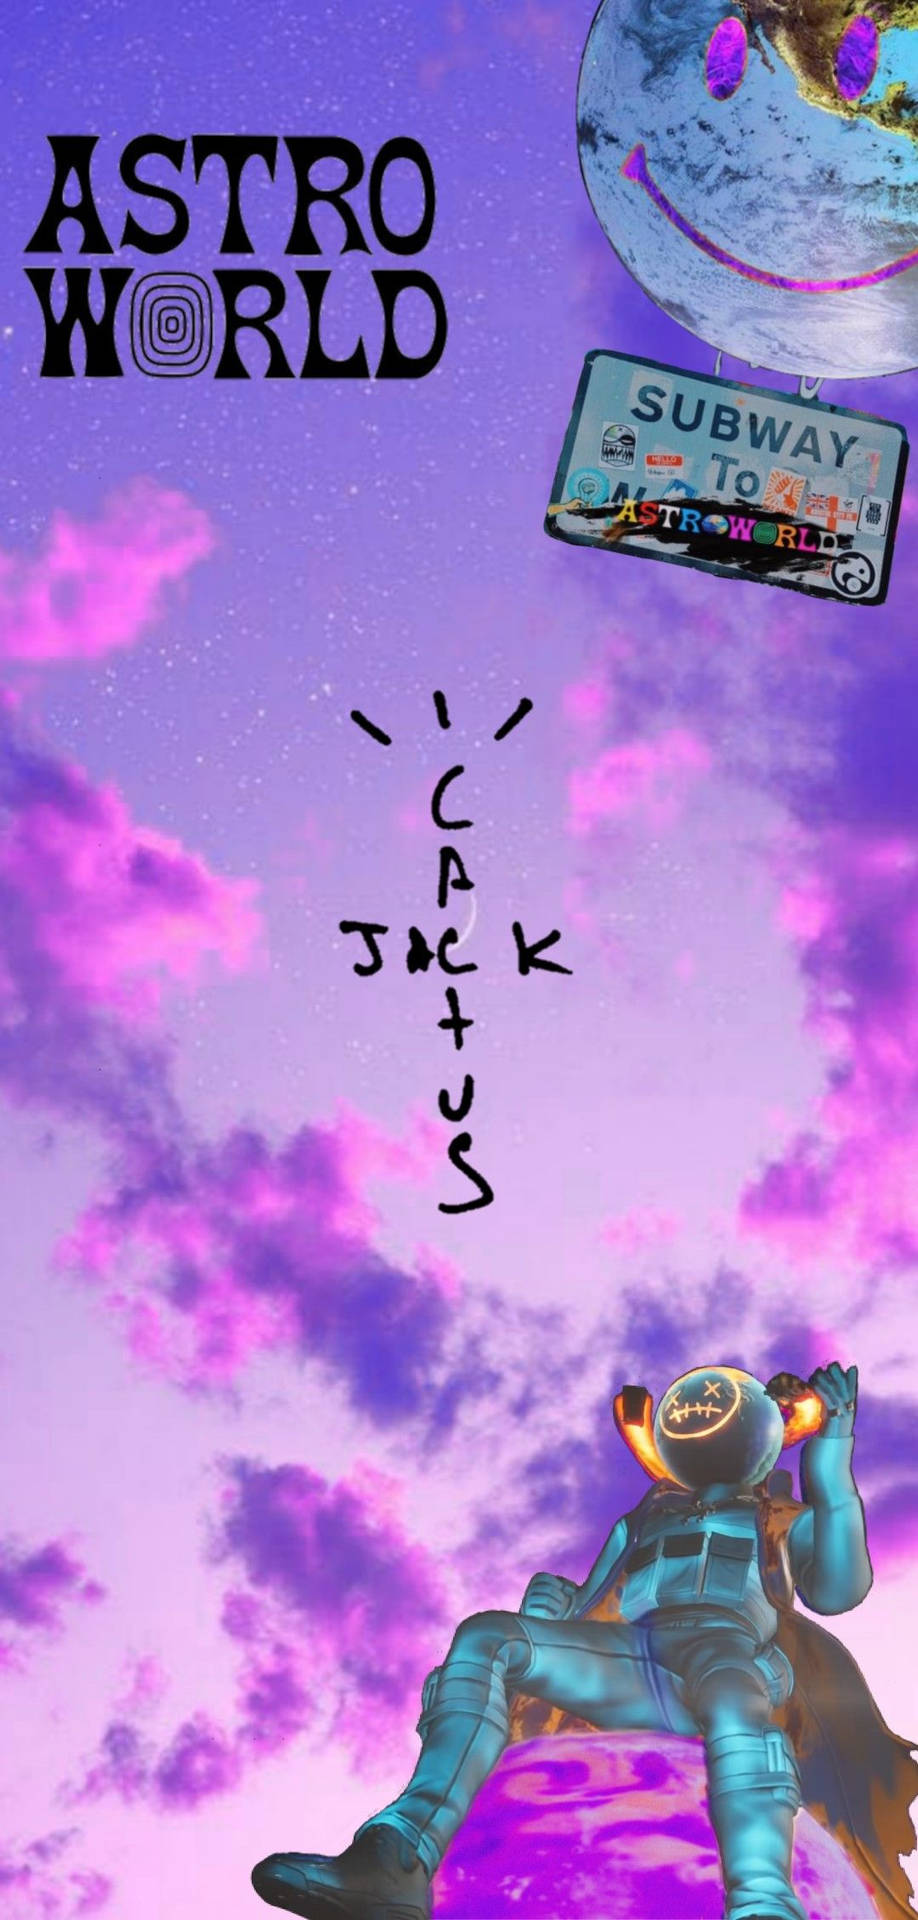 Cactus Jack Astroworld Album Wallpaper